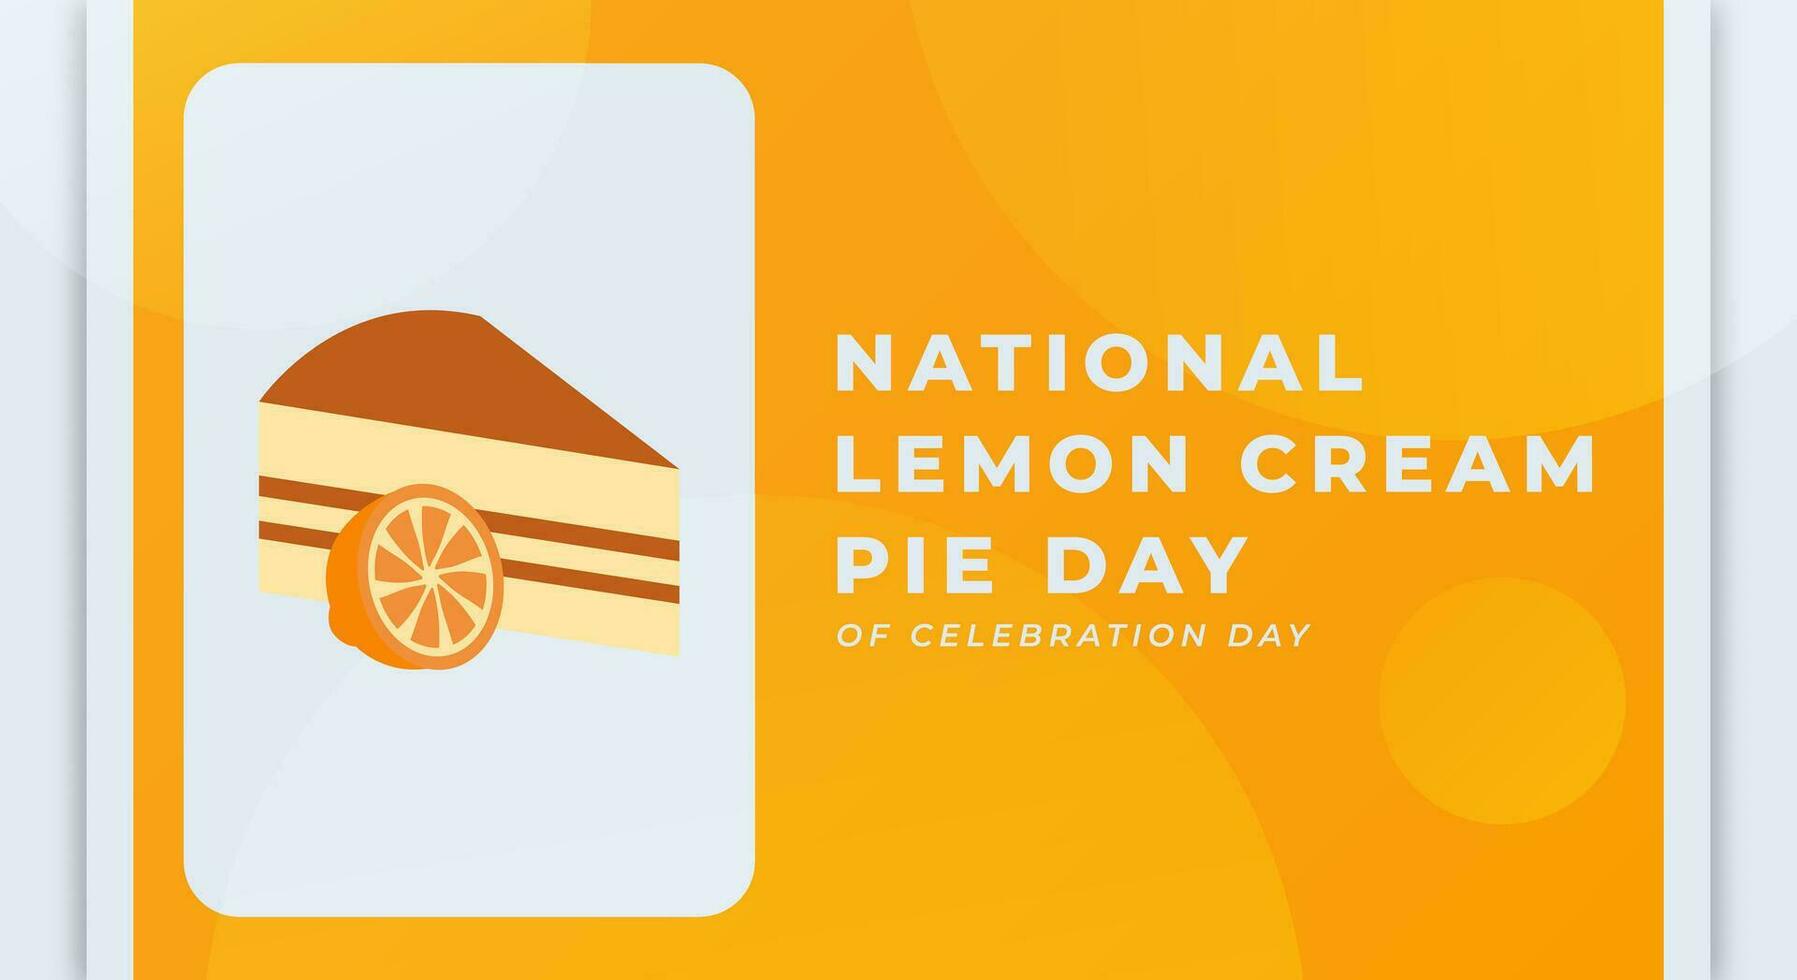 nationale citron crème tarte journée fête vecteur conception illustration pour arrière-plan, affiche, bannière, publicité, salutation carte